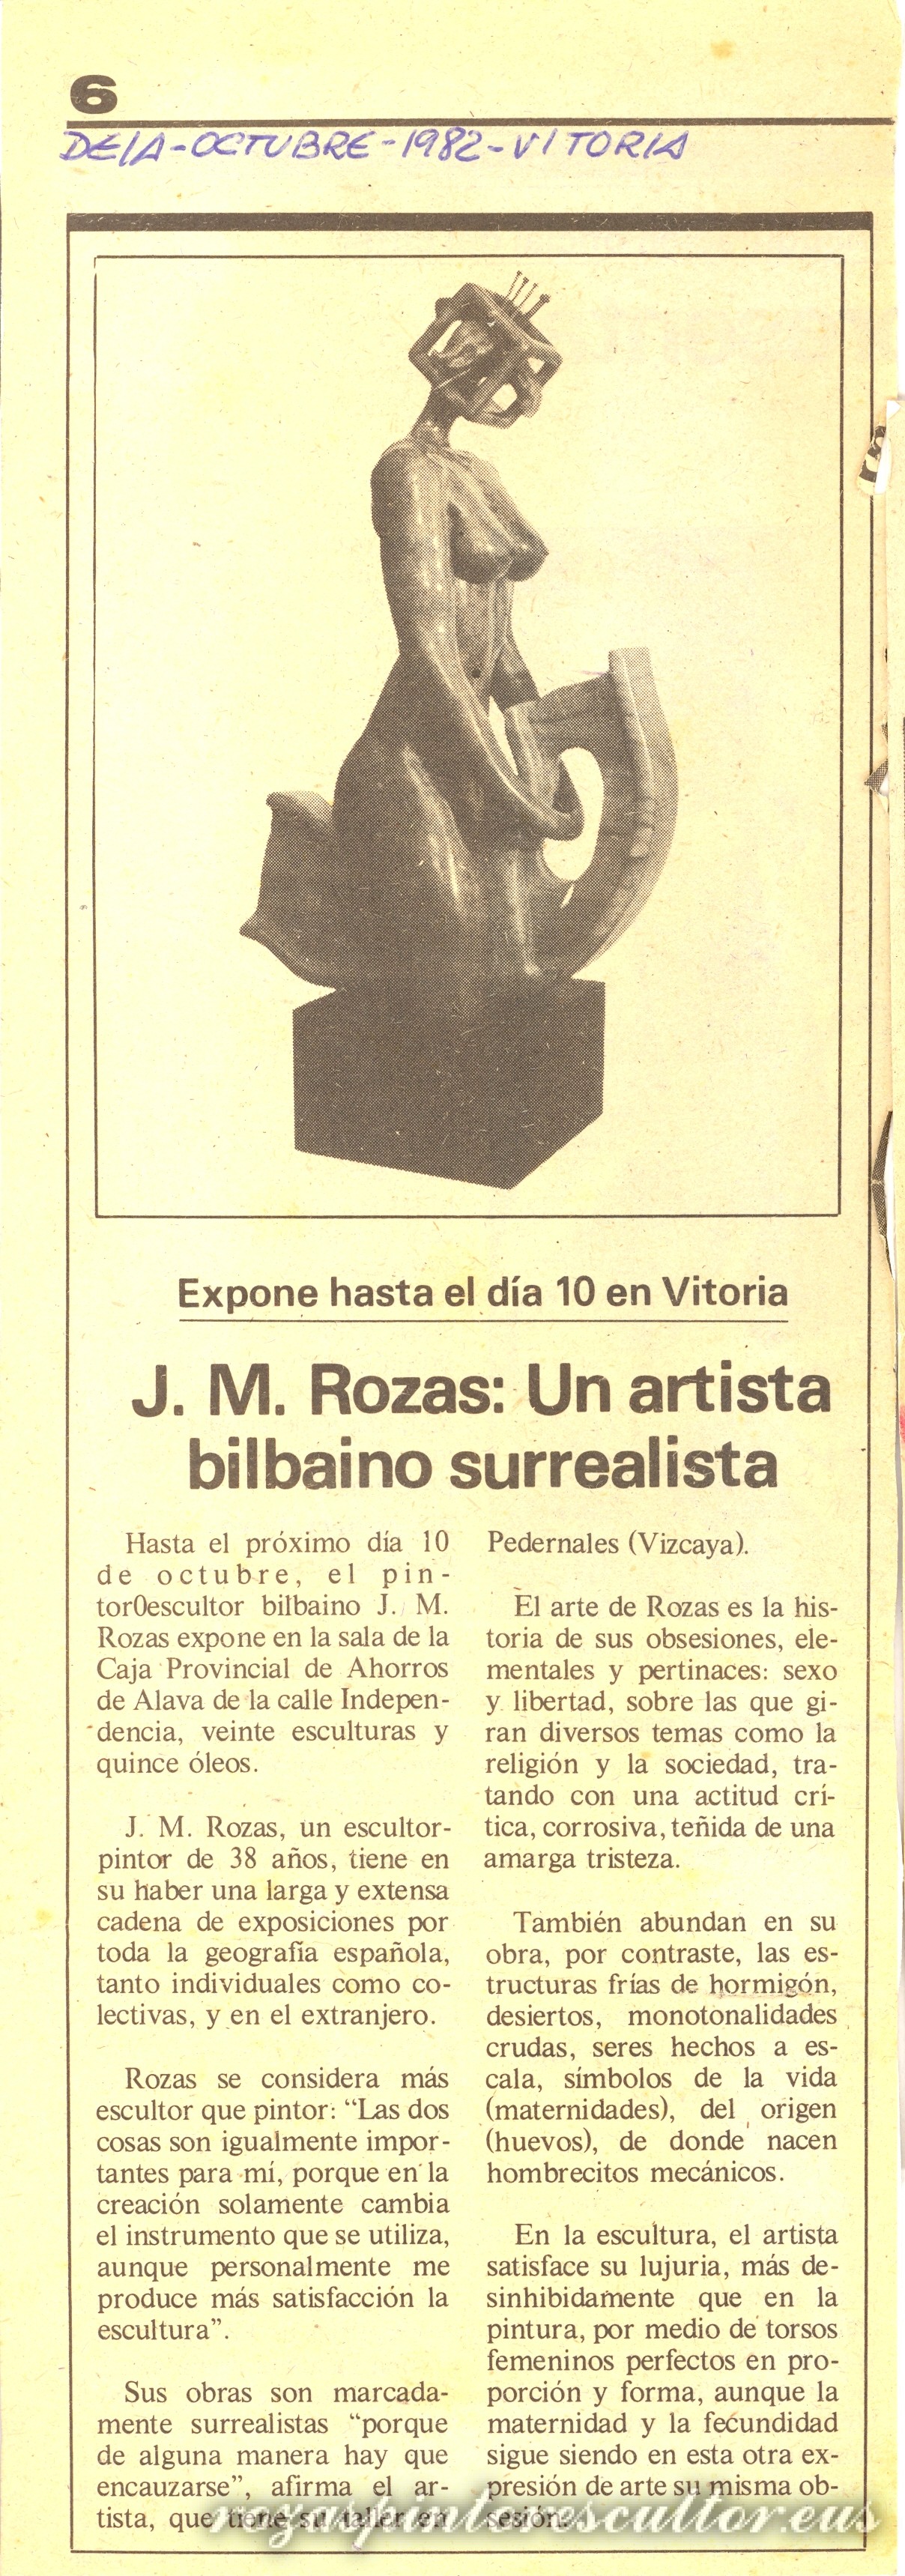 1982 Deia – J.M. Rozas: Un artista bilbaino surrealista